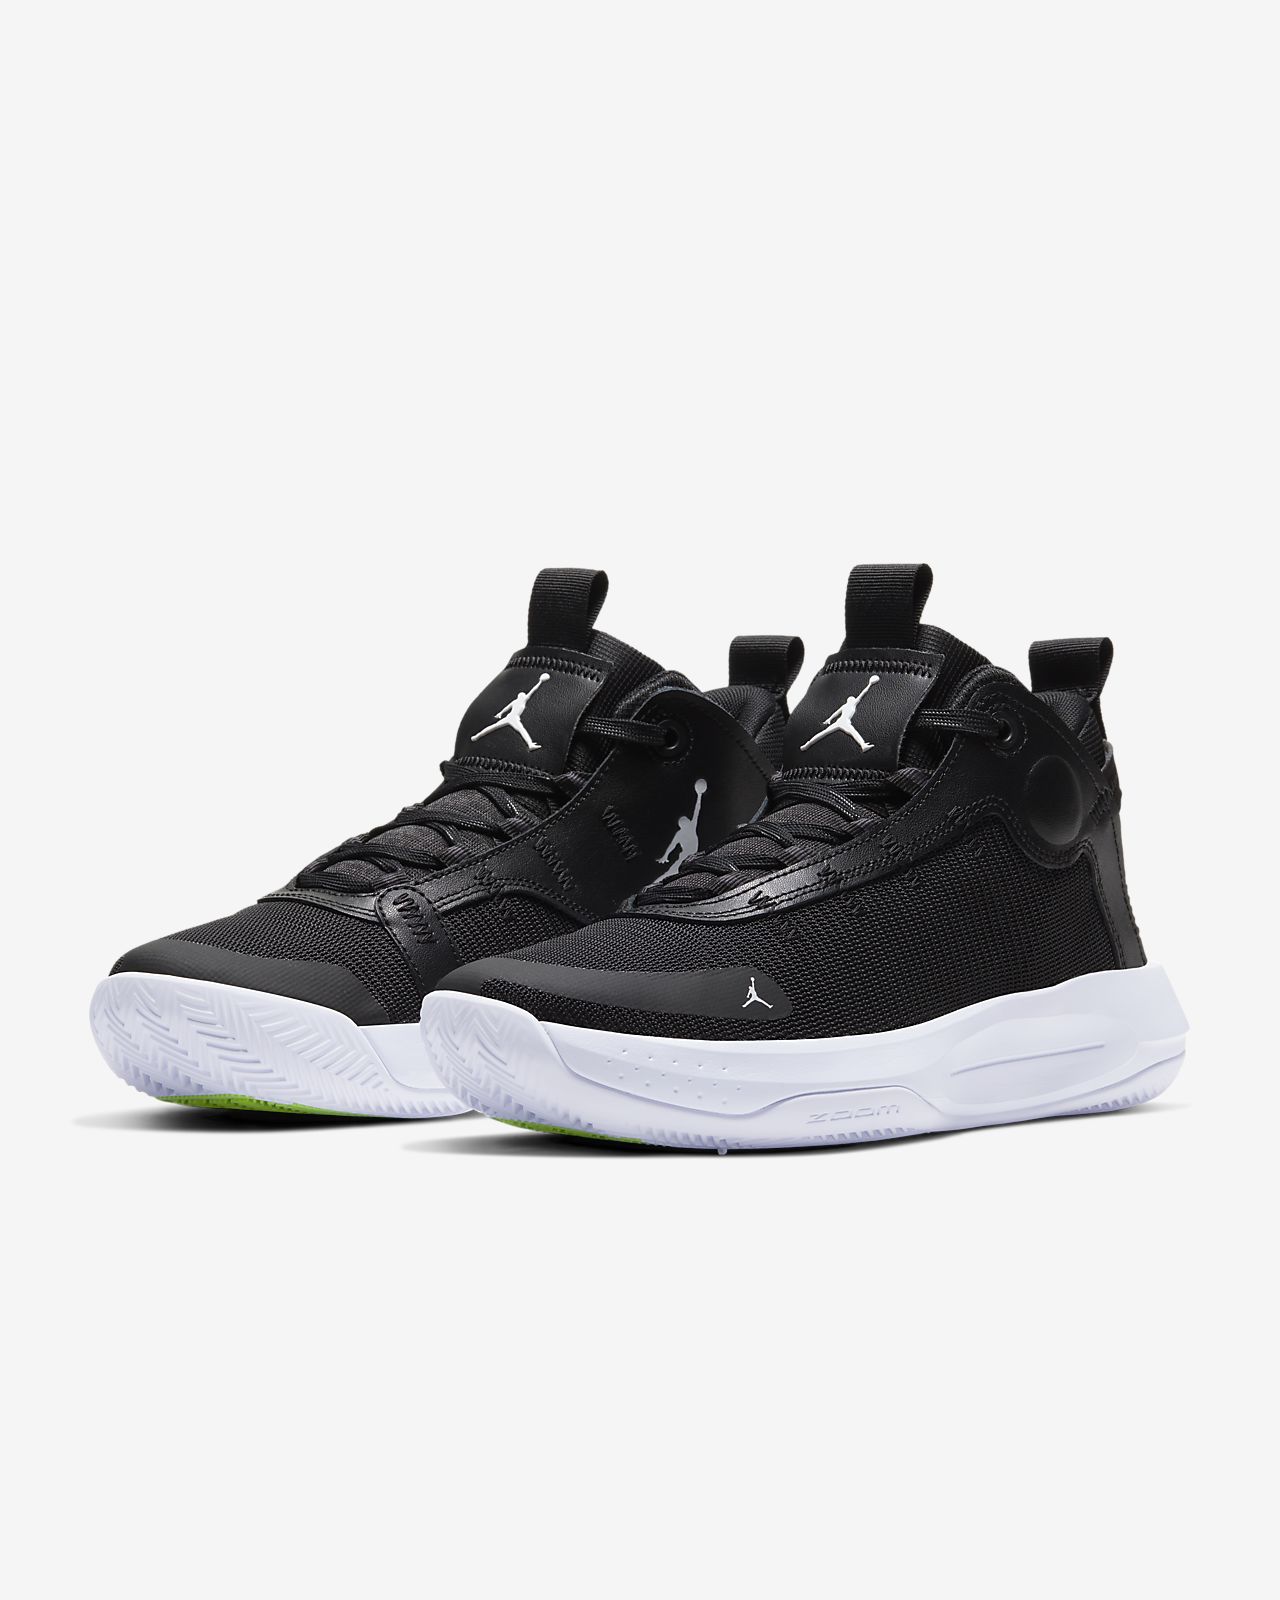  Harga  Sepatu  Nike  Air  Jordan  Original  2021